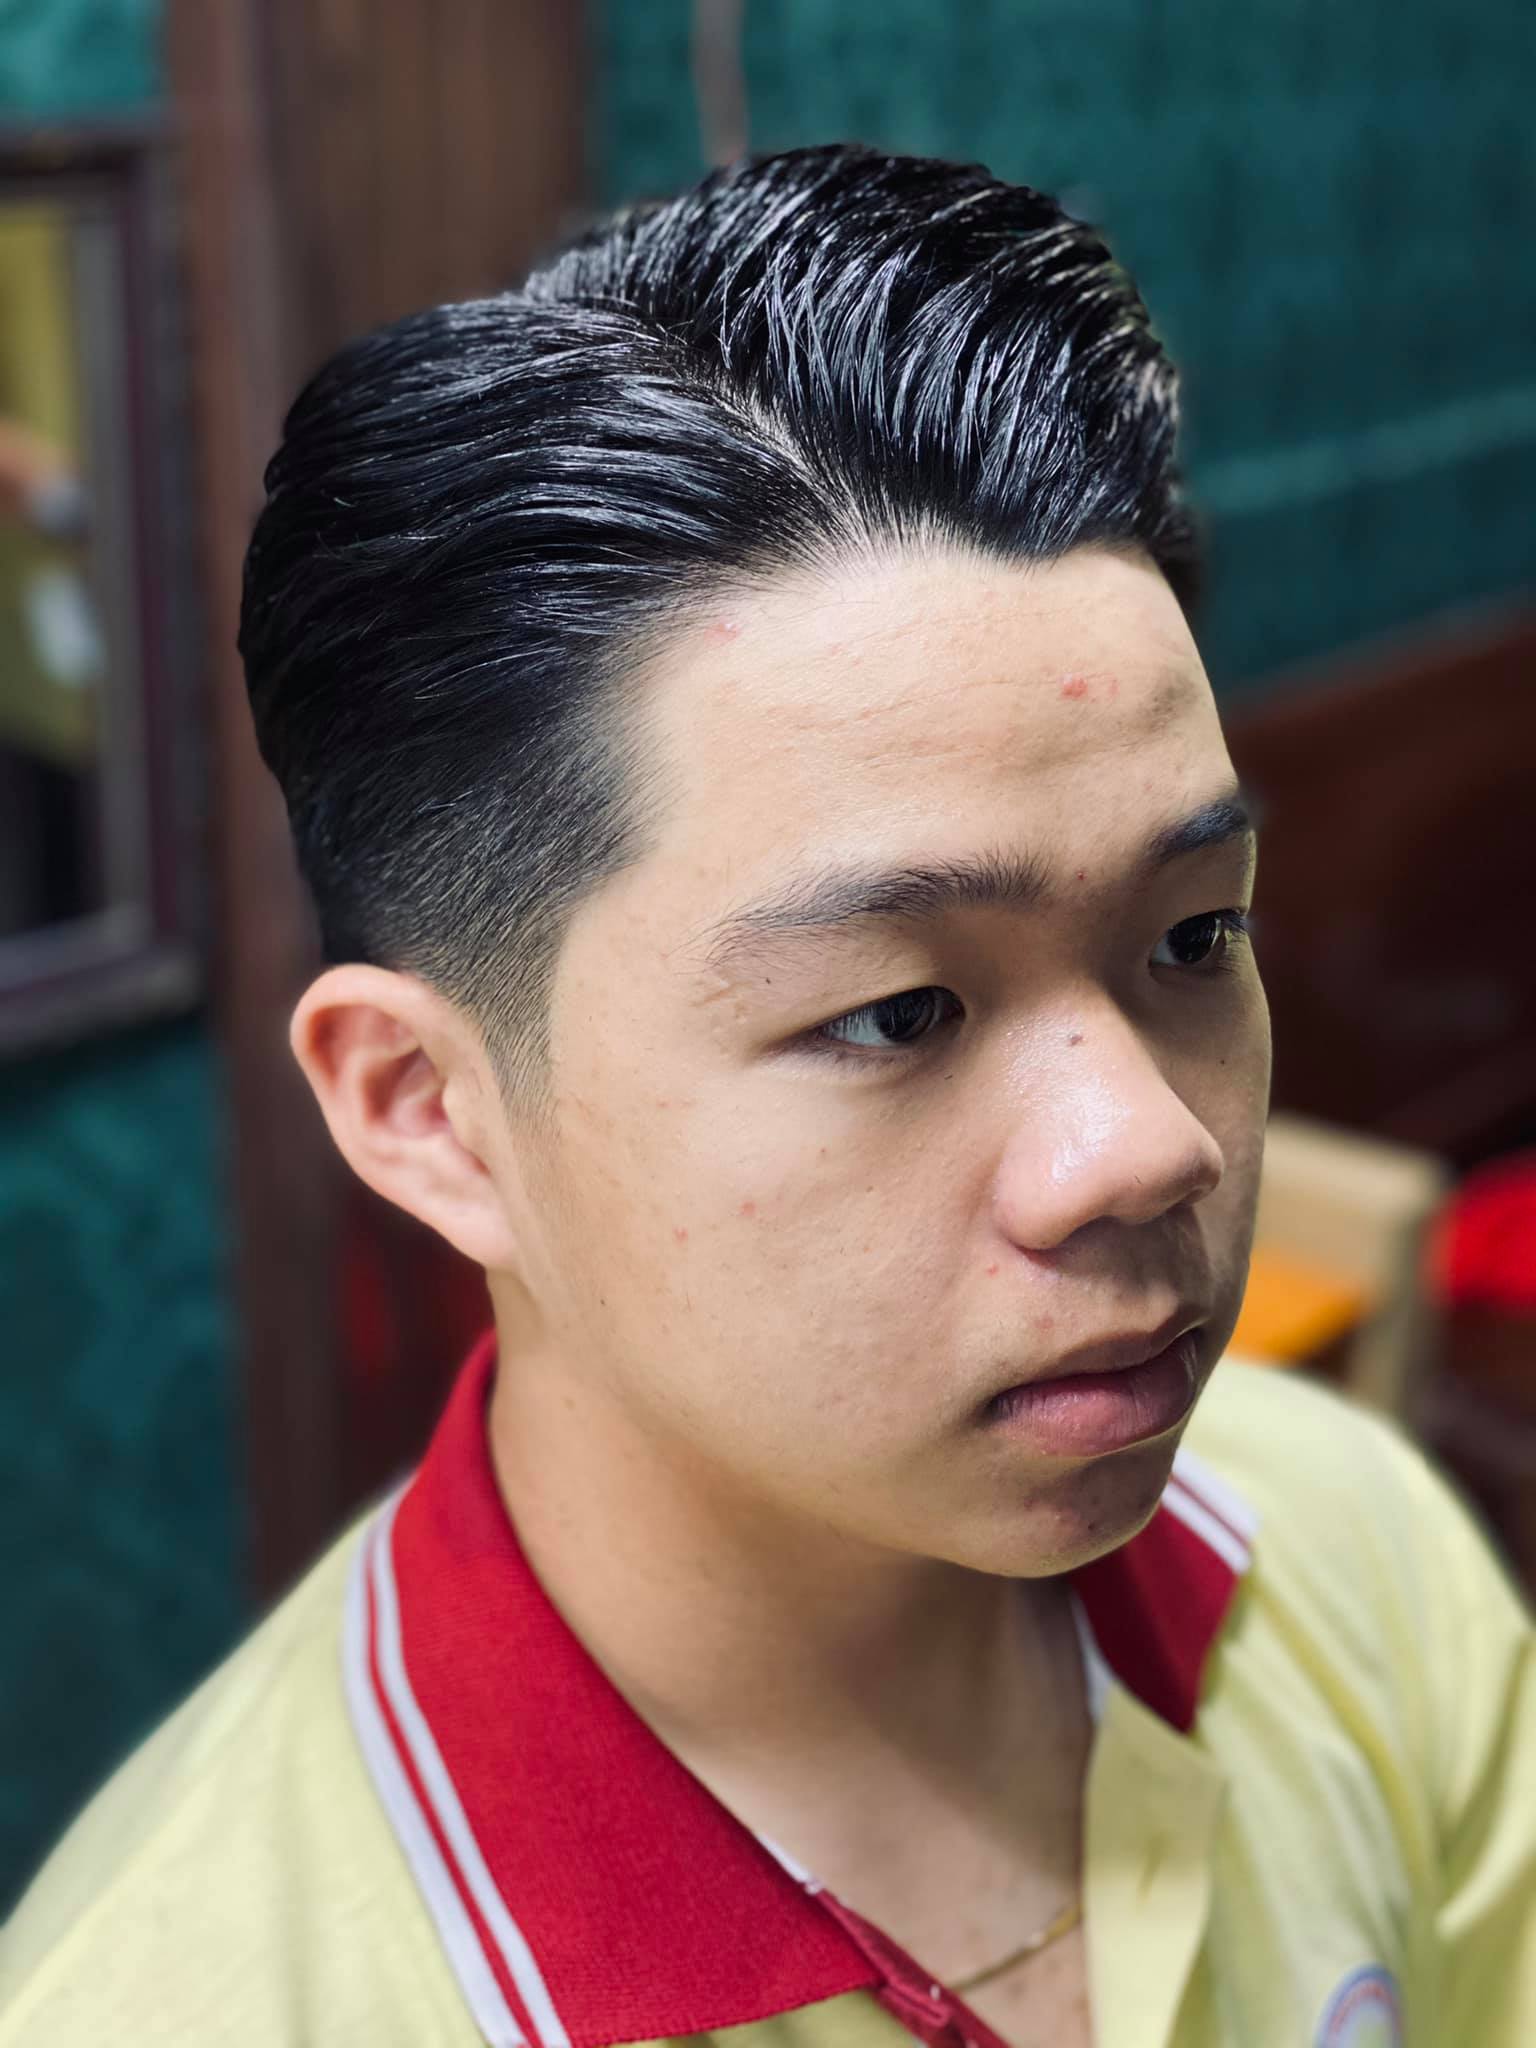 Salon Tài Hàn Quốc  nơi cắt tóc nam sóc trăng uy tín  uốn tóc nam Korea  Soc  Trang